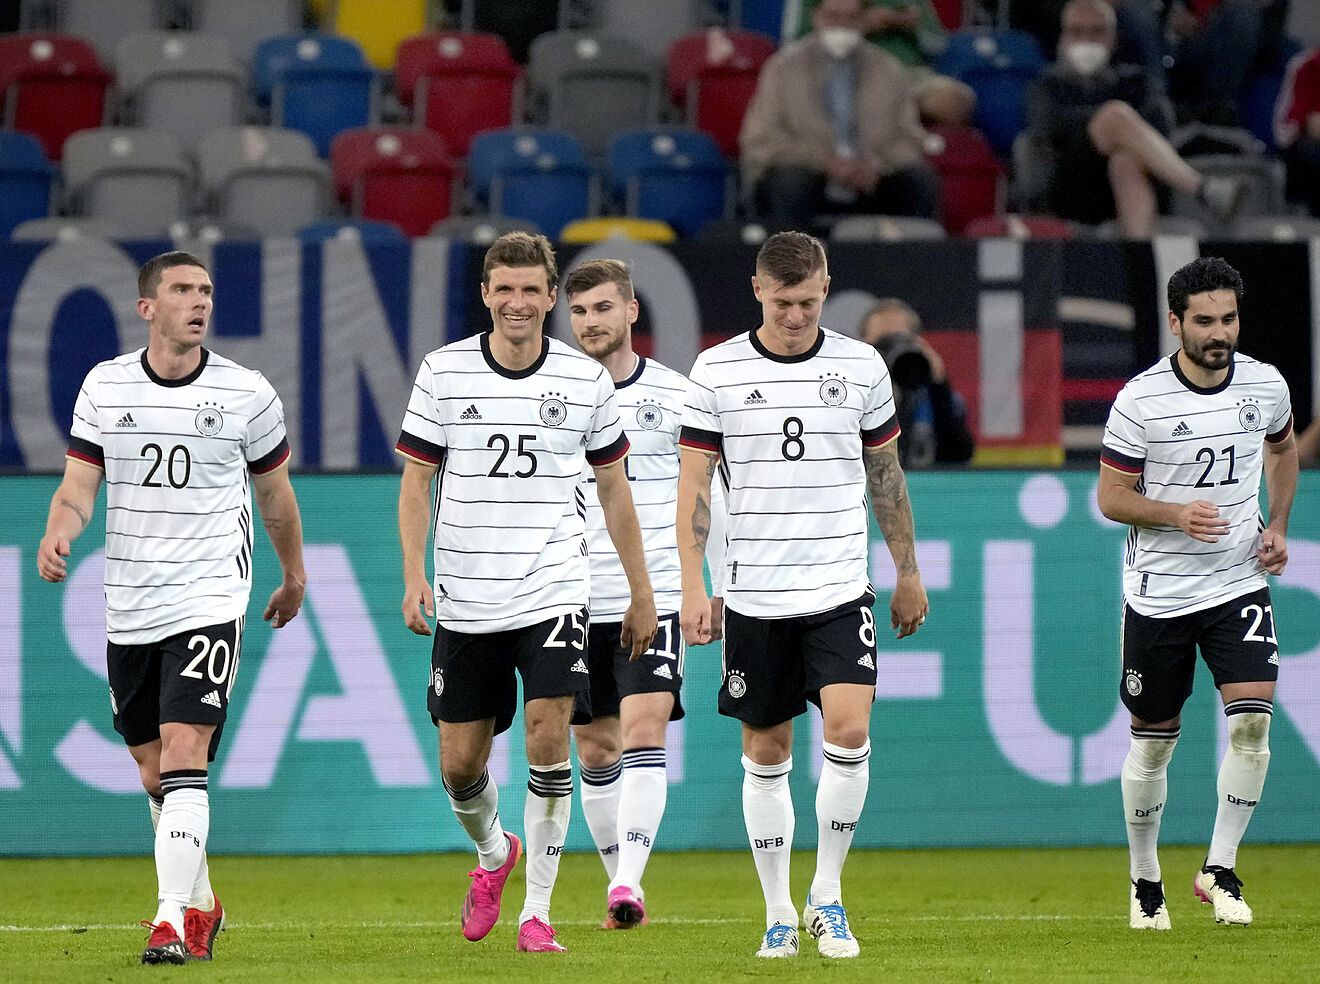 Tìm hiểu đôi chút về lịch sử của đội tuyển Đức